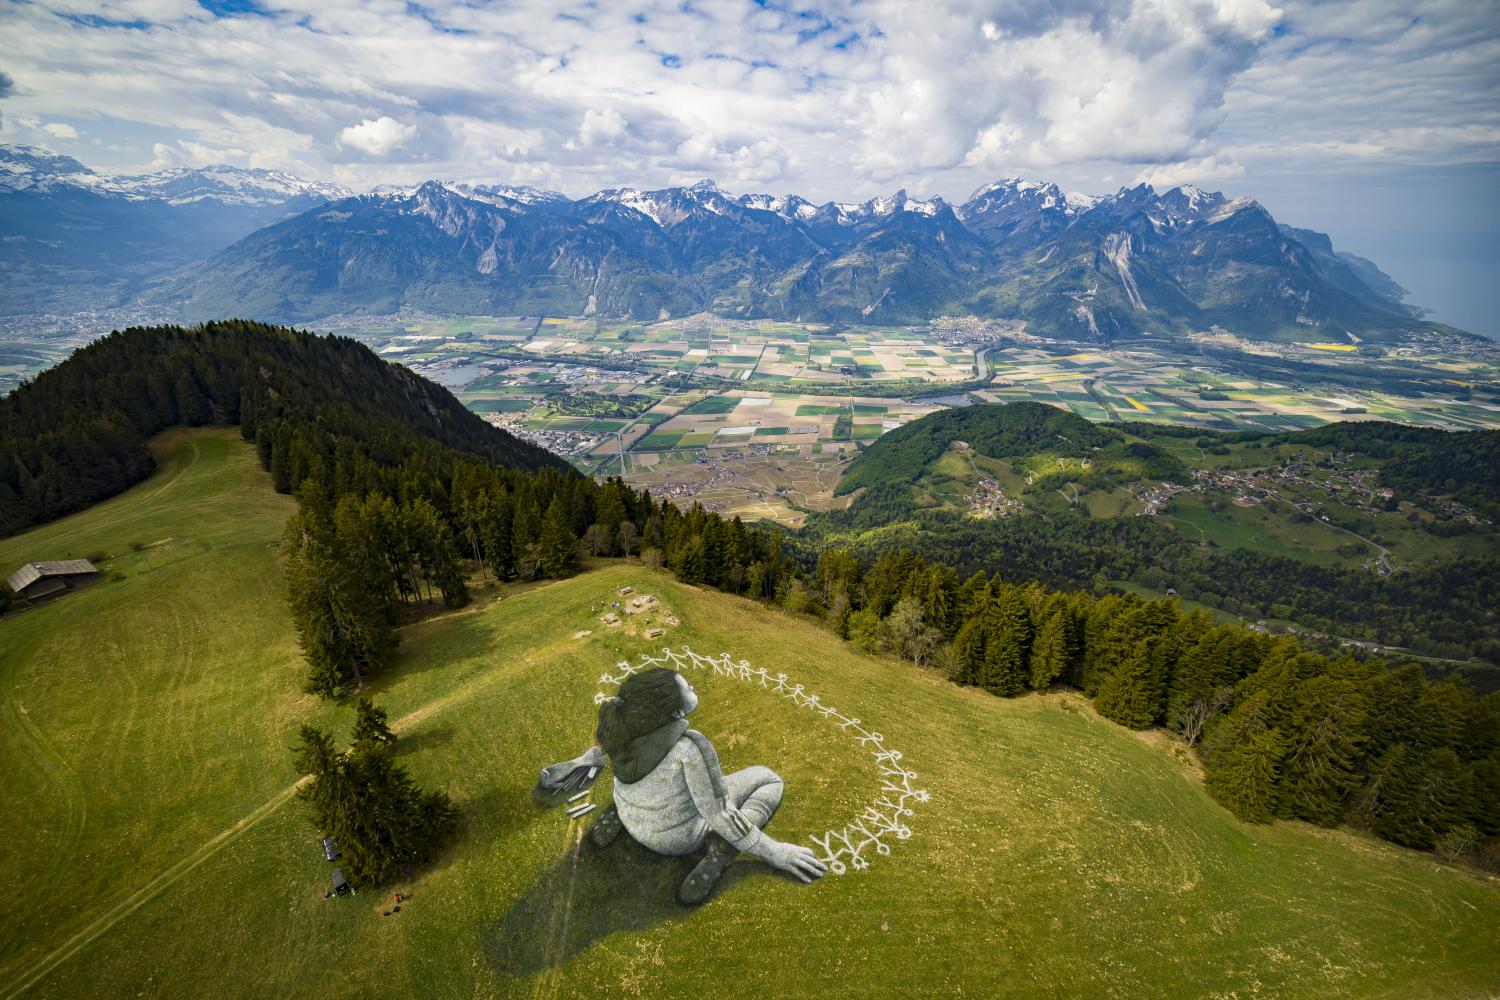 Riesiges Land-Art-Gemälde des schweizerisch-französischen Künstlers Saype mit dem Titel "Jenseits der Krise" über eine Wiese des alpinen Ferienorts Leysin